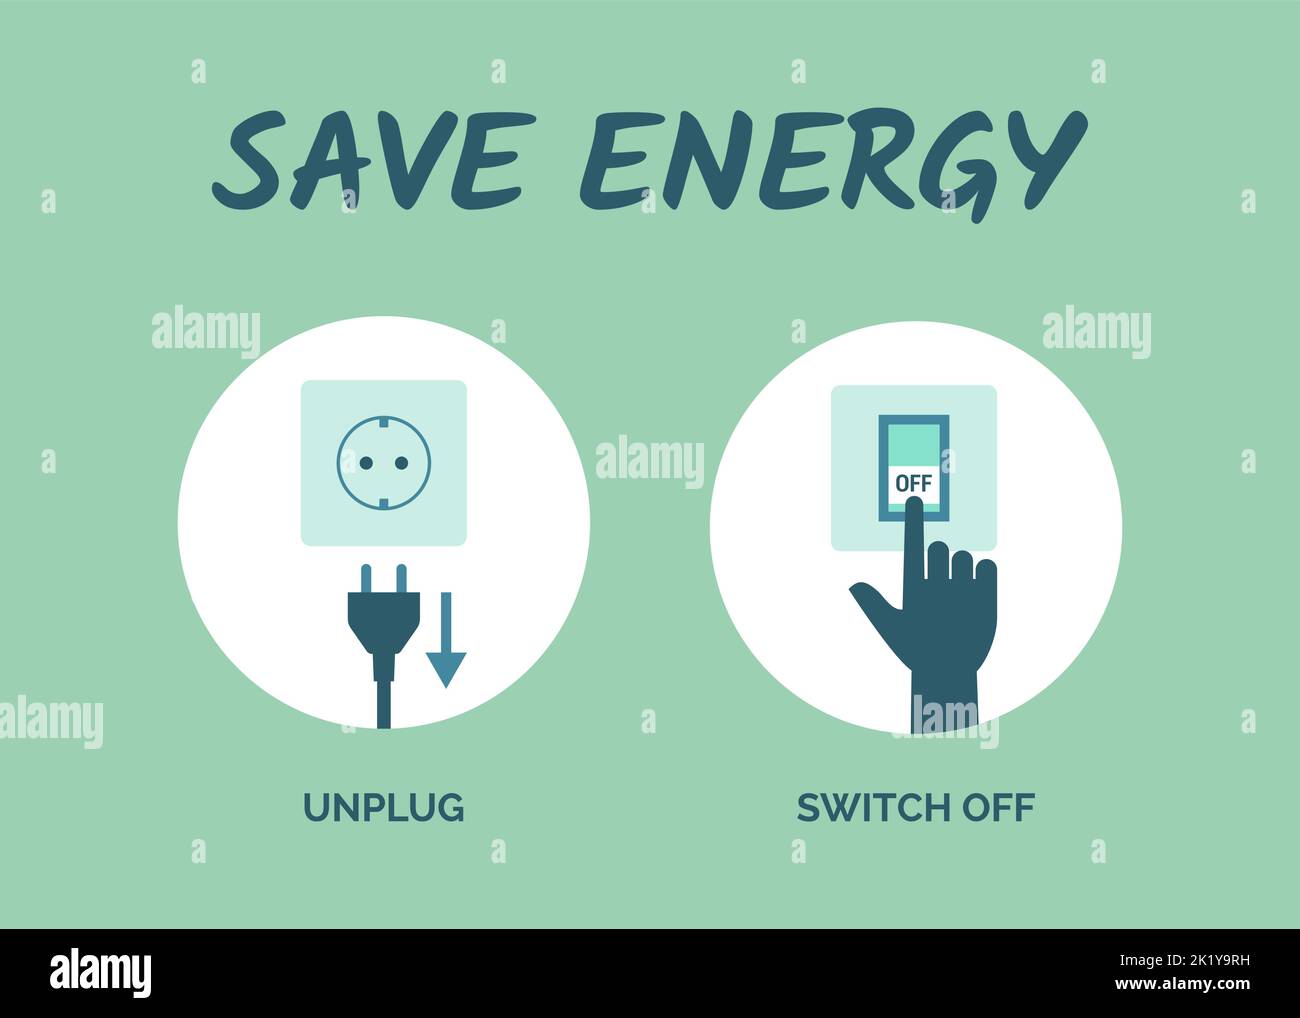 Tipps zum Energiesparen: Trennen Sie Geräte, wenn sie nicht in Gebrauch sind, und schalten Sie das Licht aus Stock Vektor